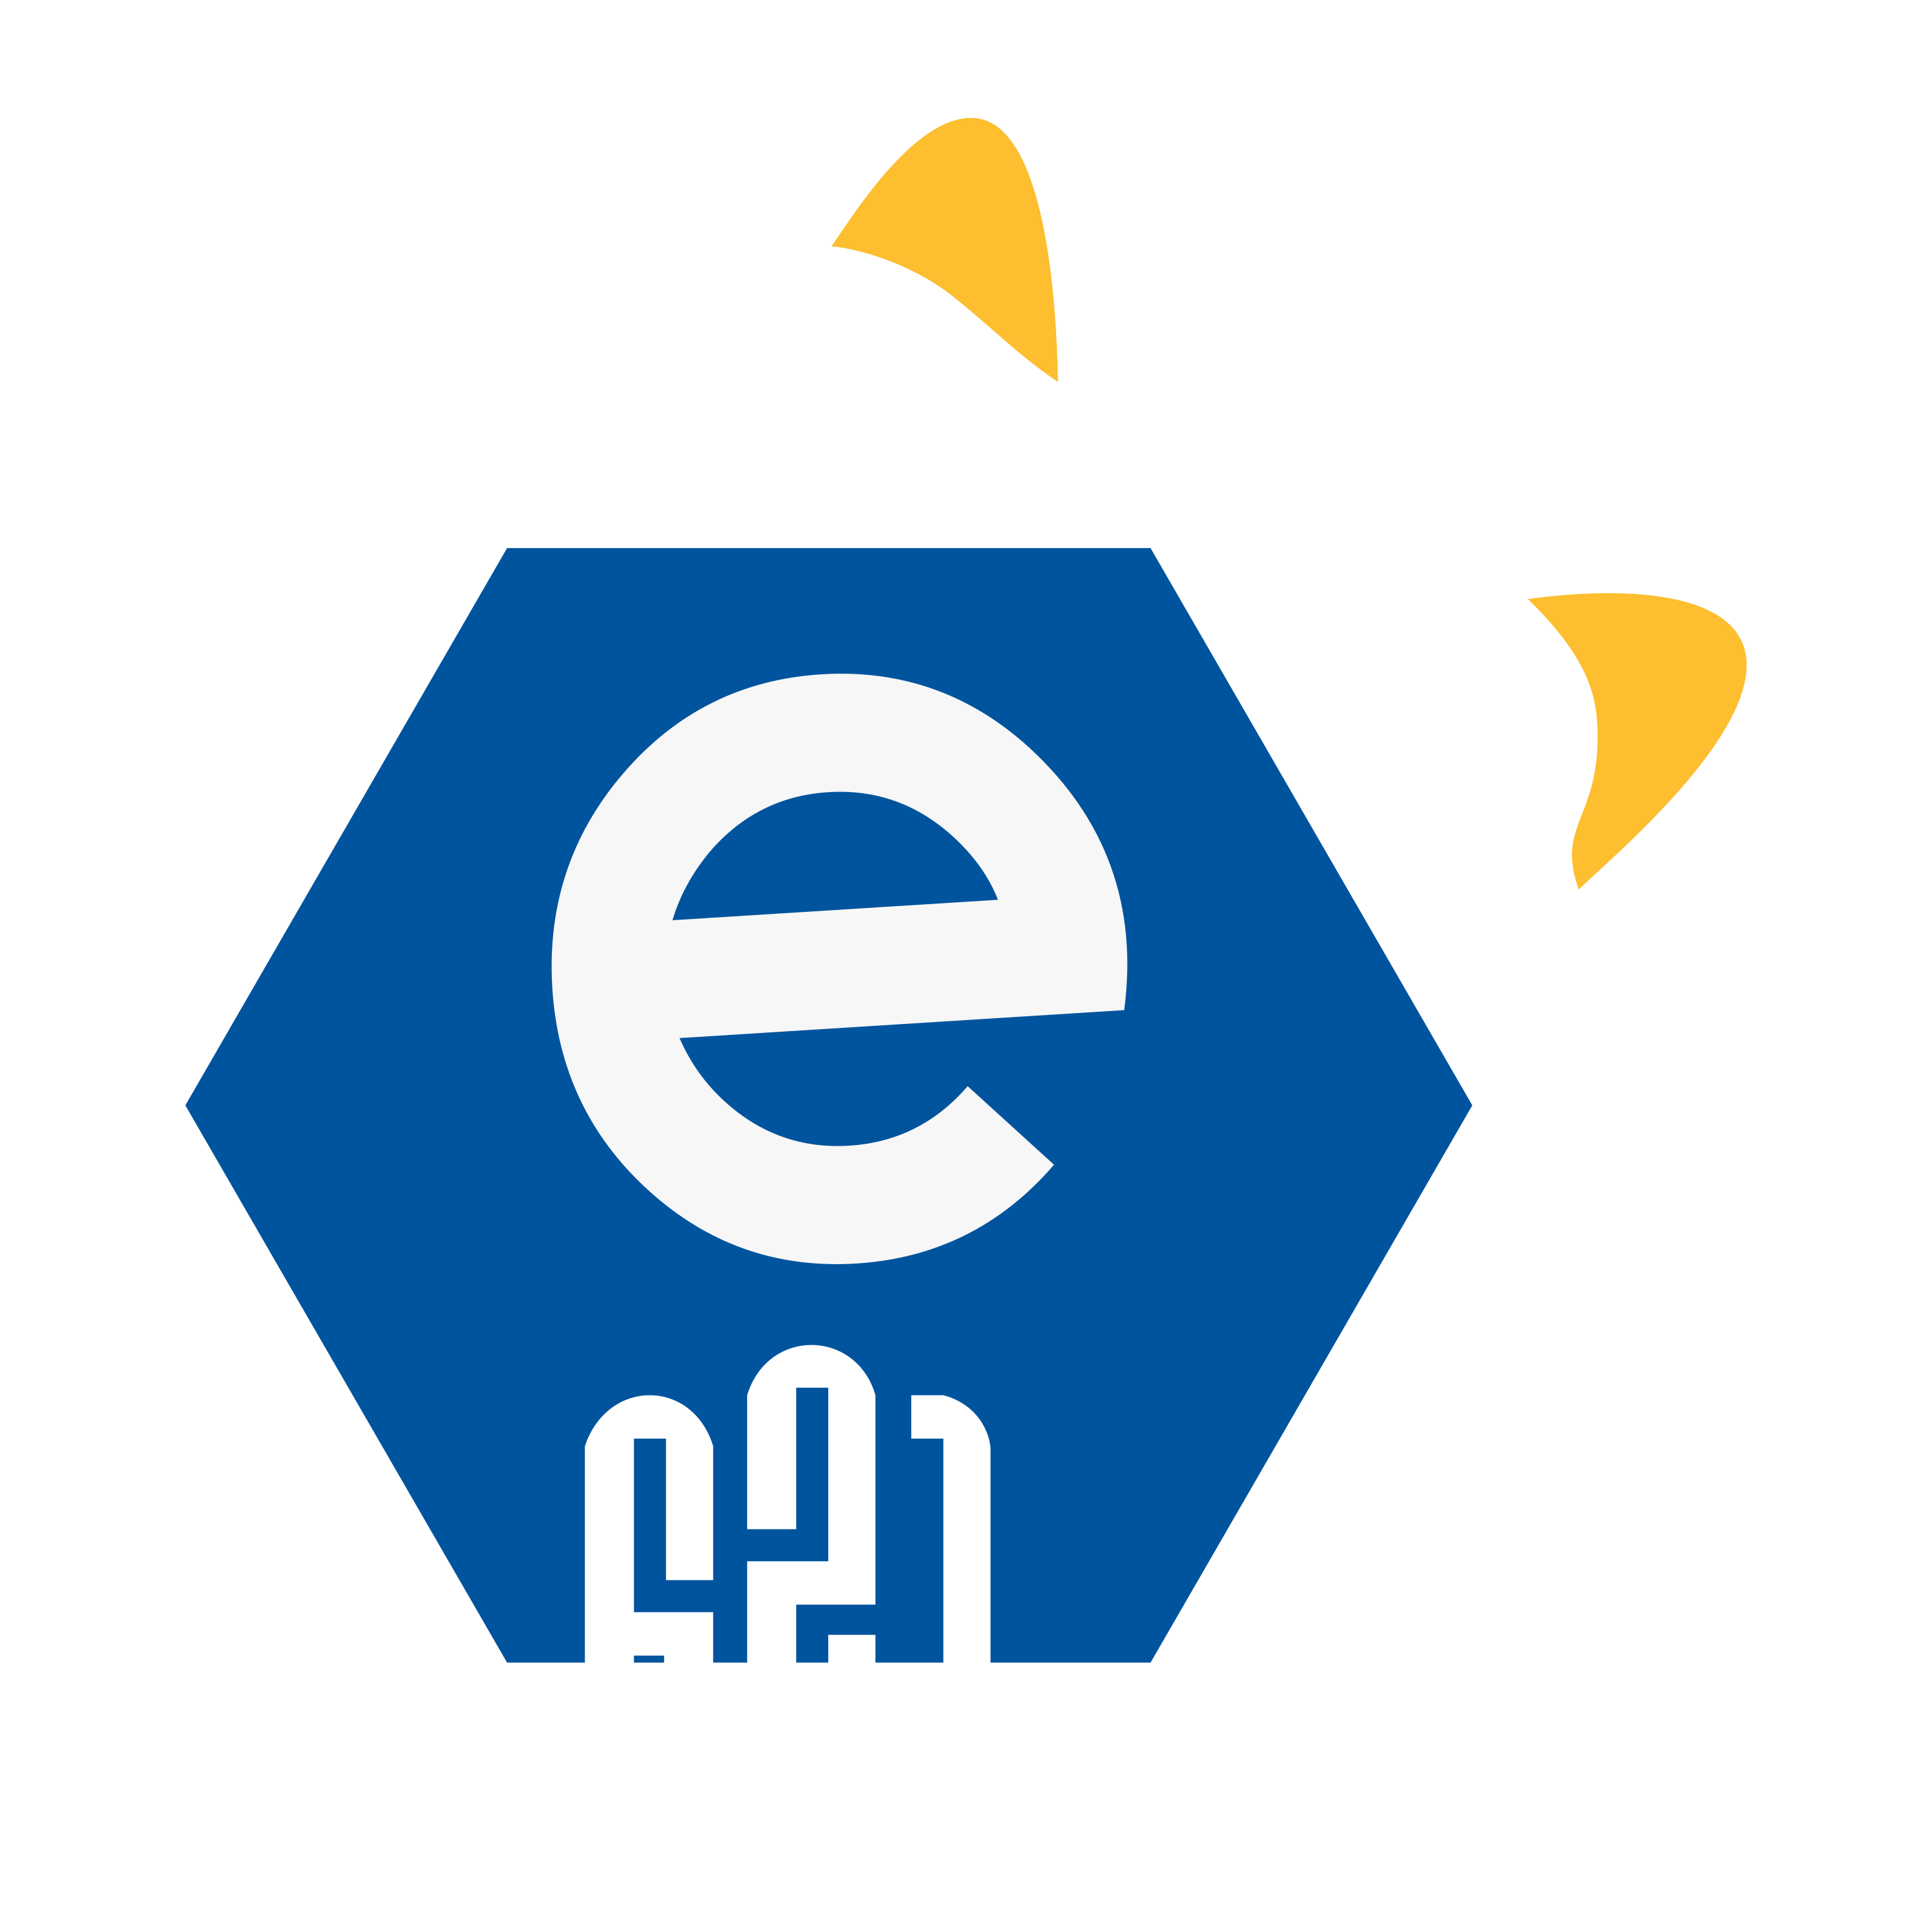 E621 Logo  Transparent Image